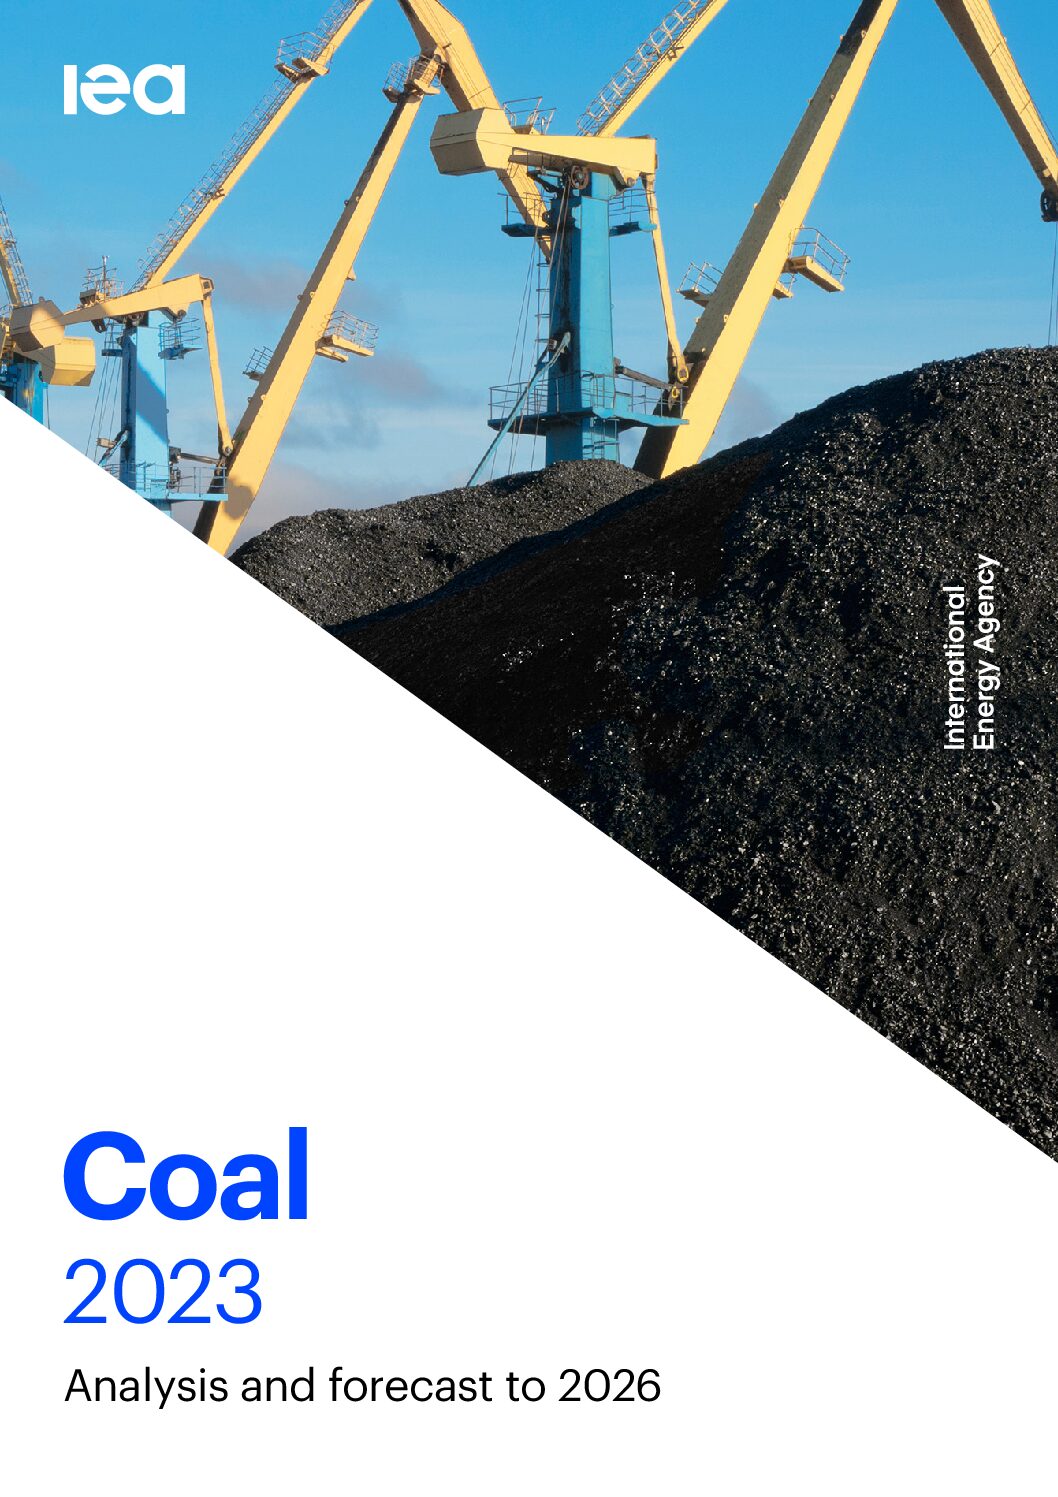 Coal 2023 Analysis and forecast to 2026 – IEA